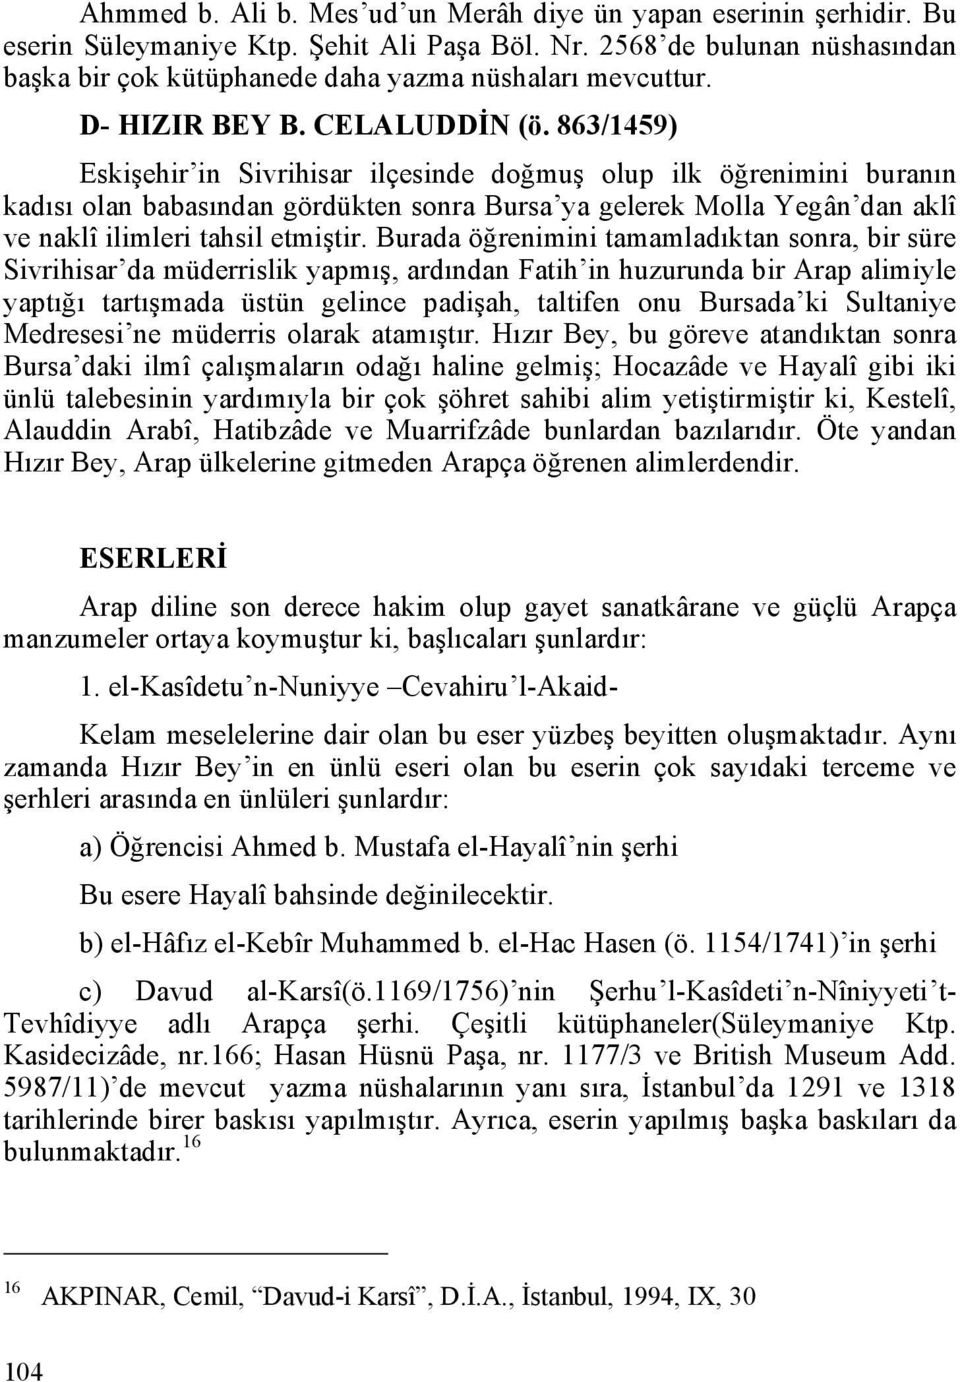 863/1459) Eskişehir in Sivrihisar ilçesinde doğmuş olup ilk öğrenimini buranın kadısı olan babasından gördükten sonra Bursa ya gelerek Molla Yegân dan aklî ve naklî ilimleri tahsil etmiştir.